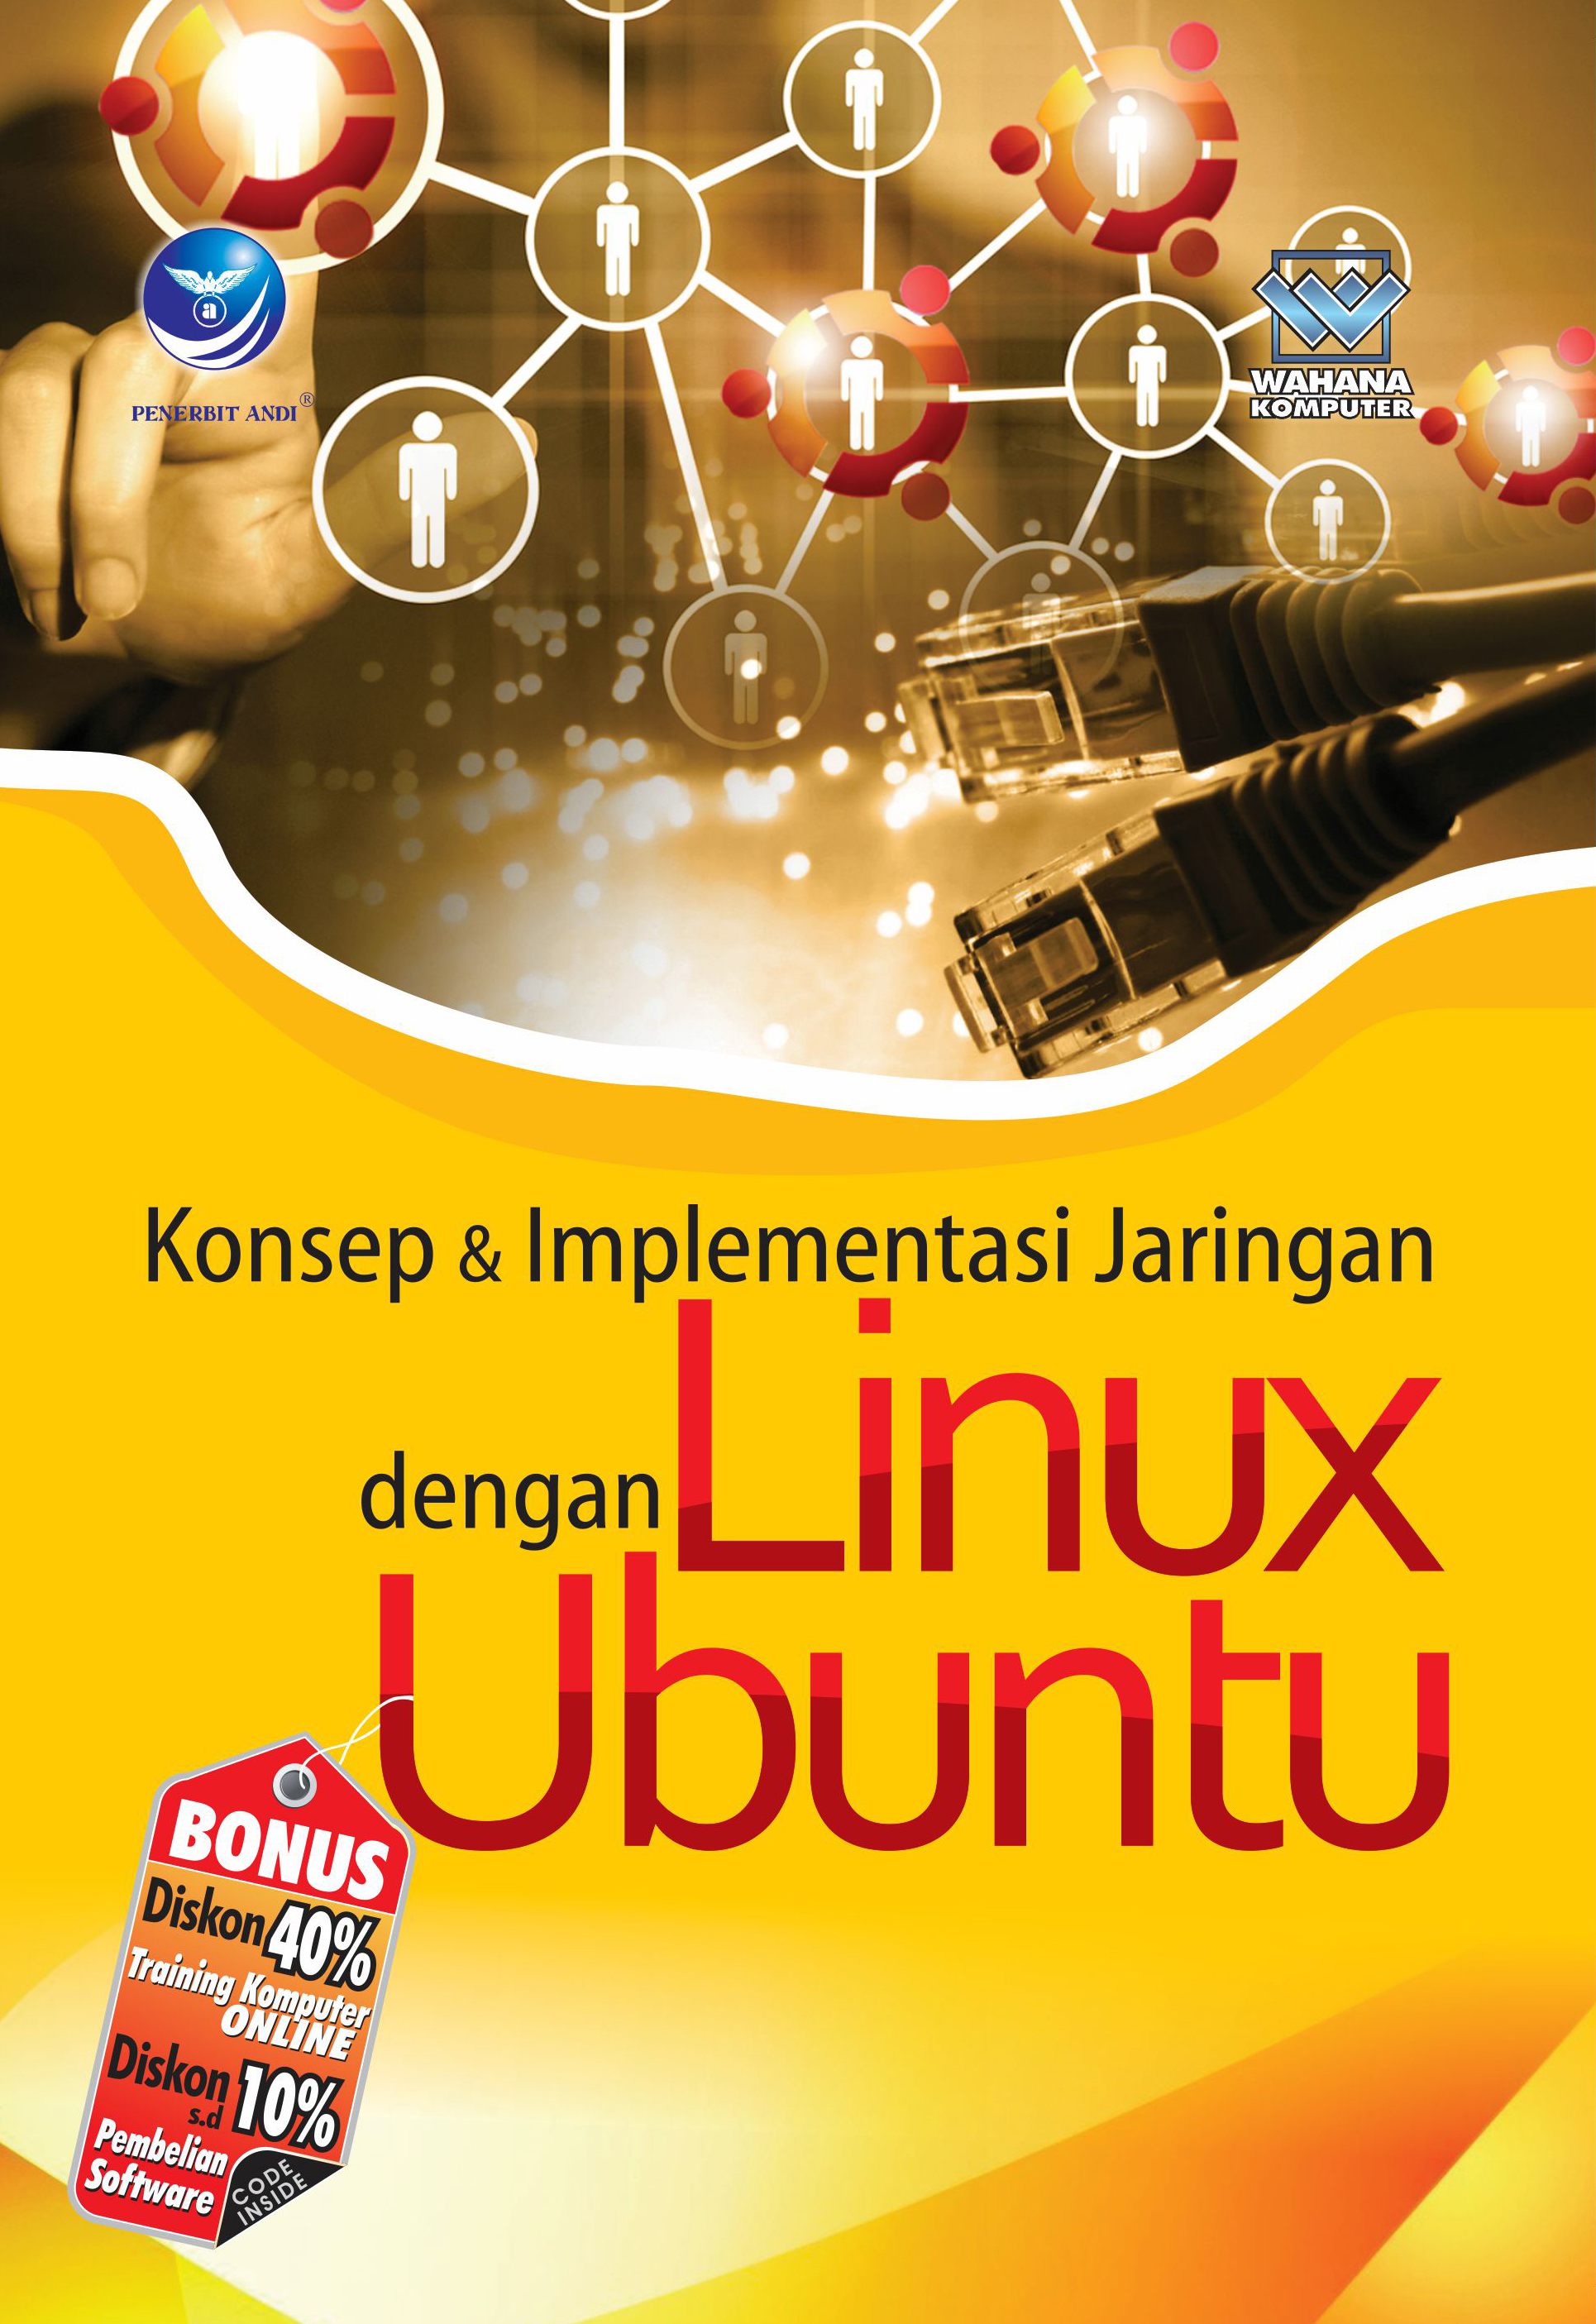 Konsep dan implementasi jaringan dengan linux ubuntu [sumber elektronis]